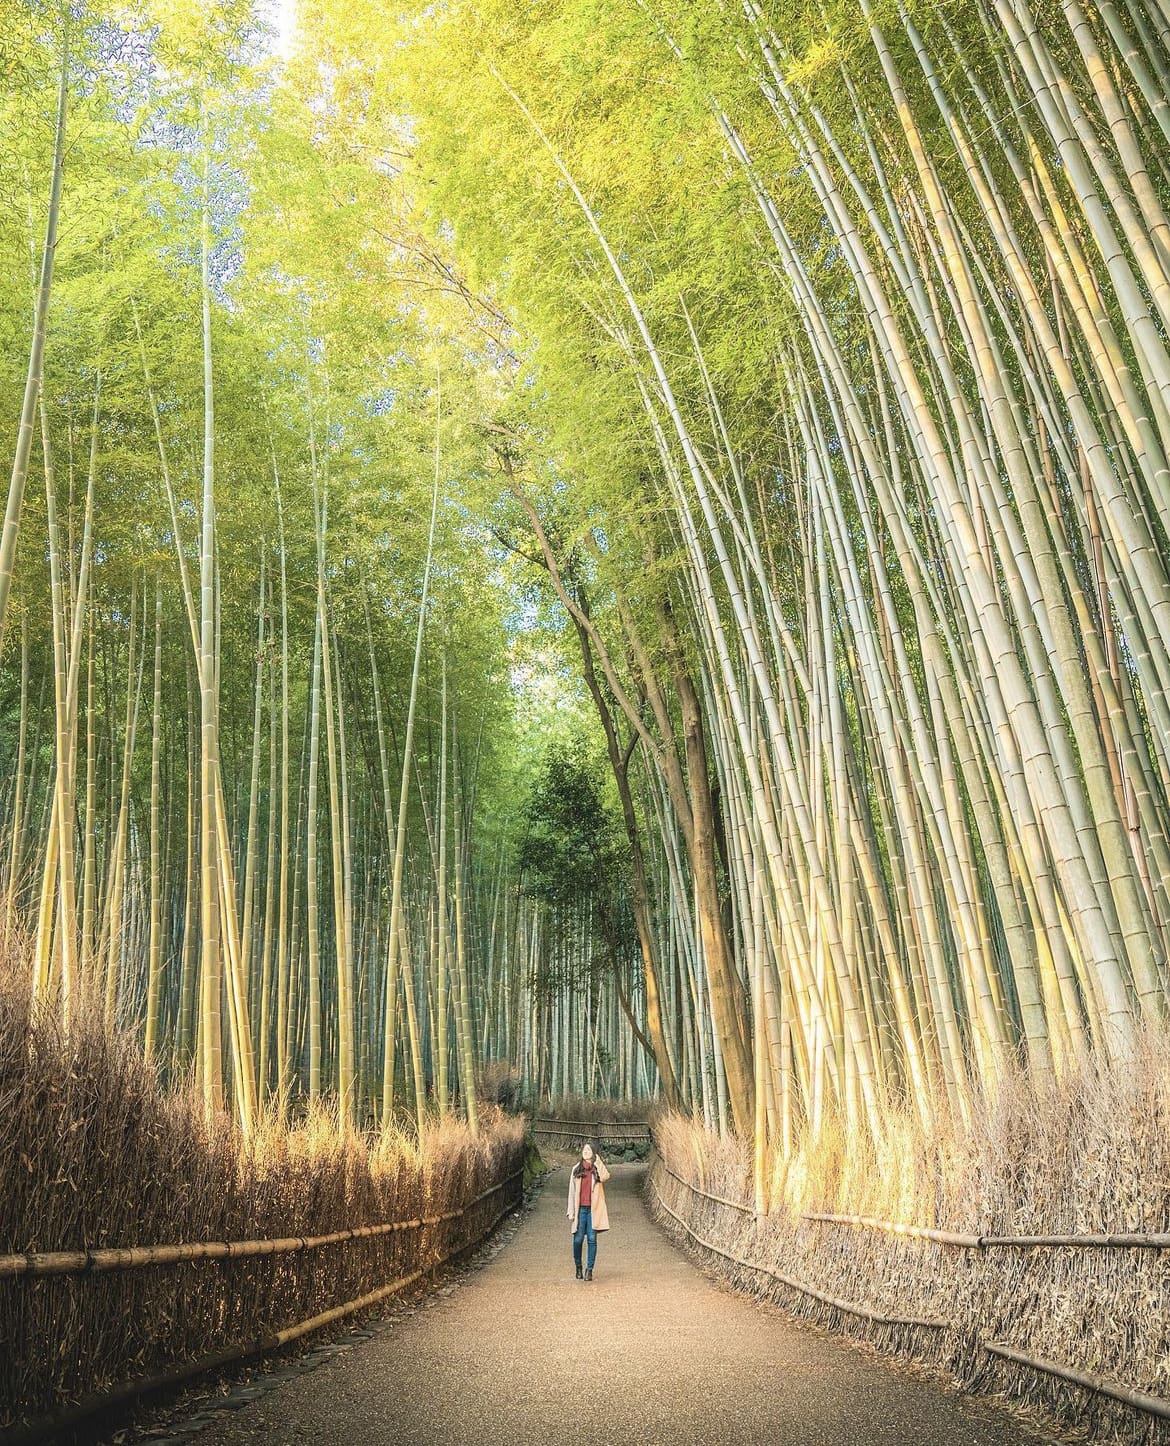 Bamboo Forest of Arashiyama